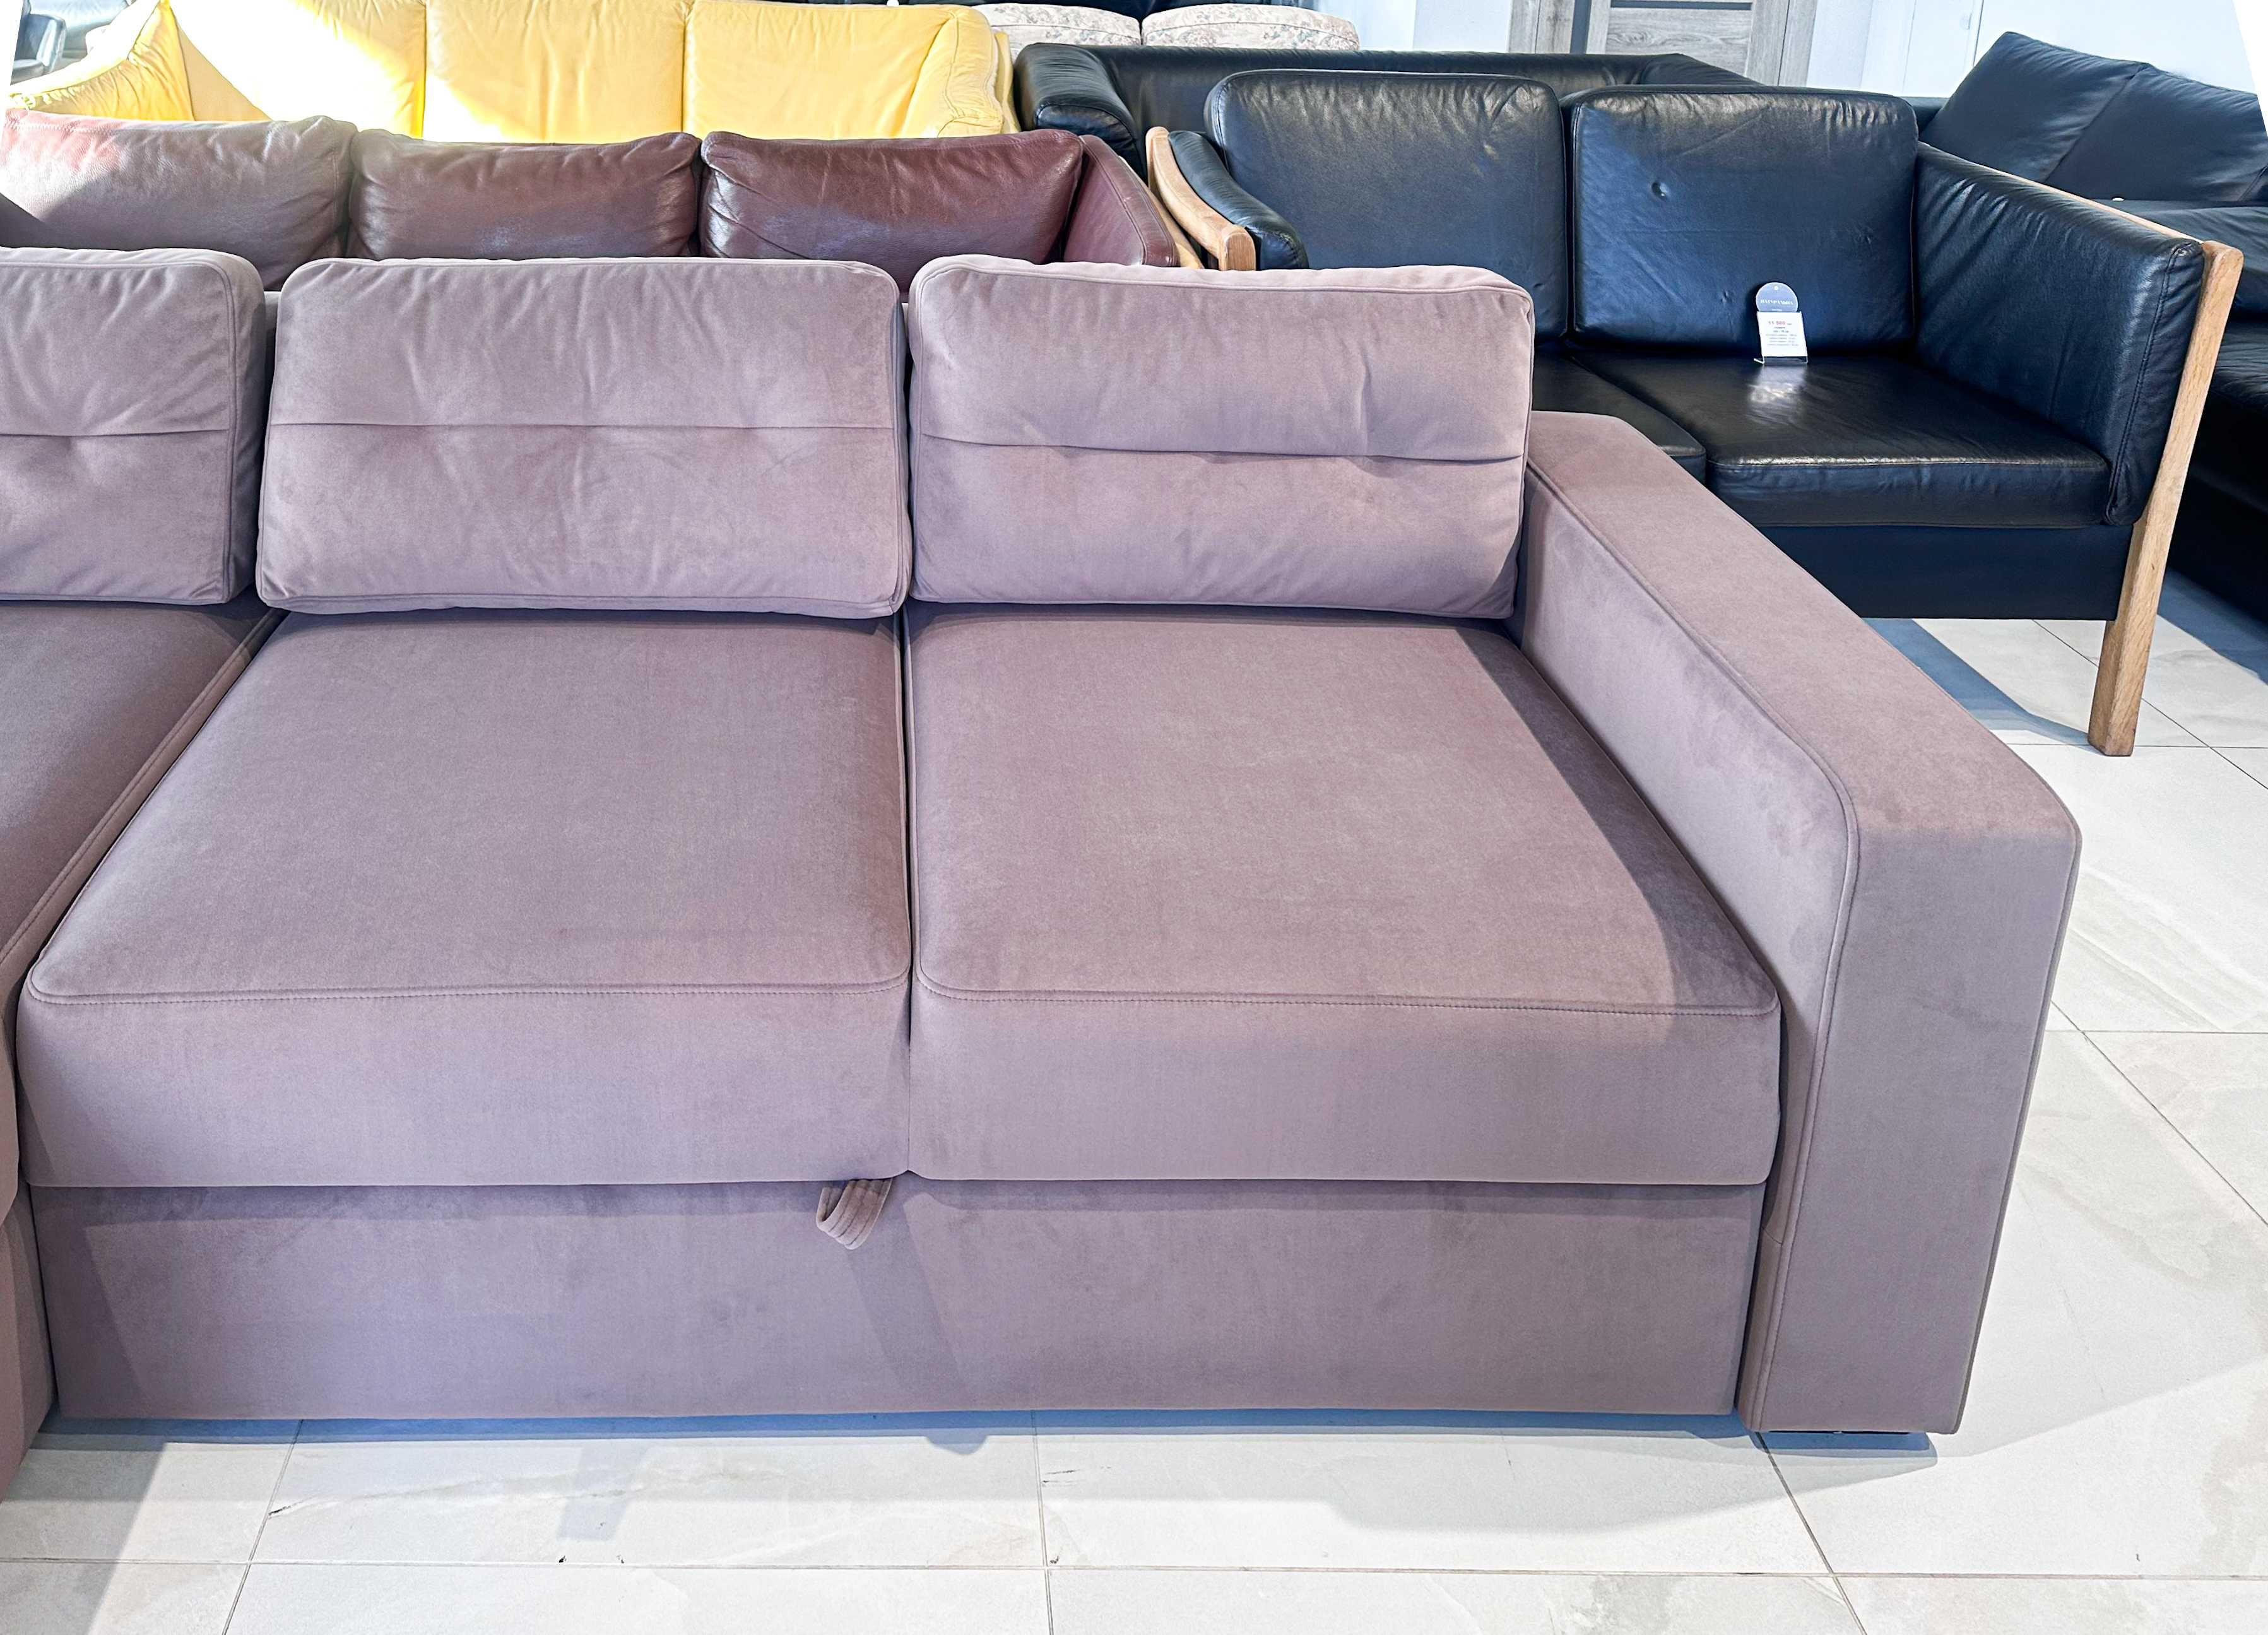 Велюровий розкладний кутовий диван/розкладні дивани/меблі з Європи